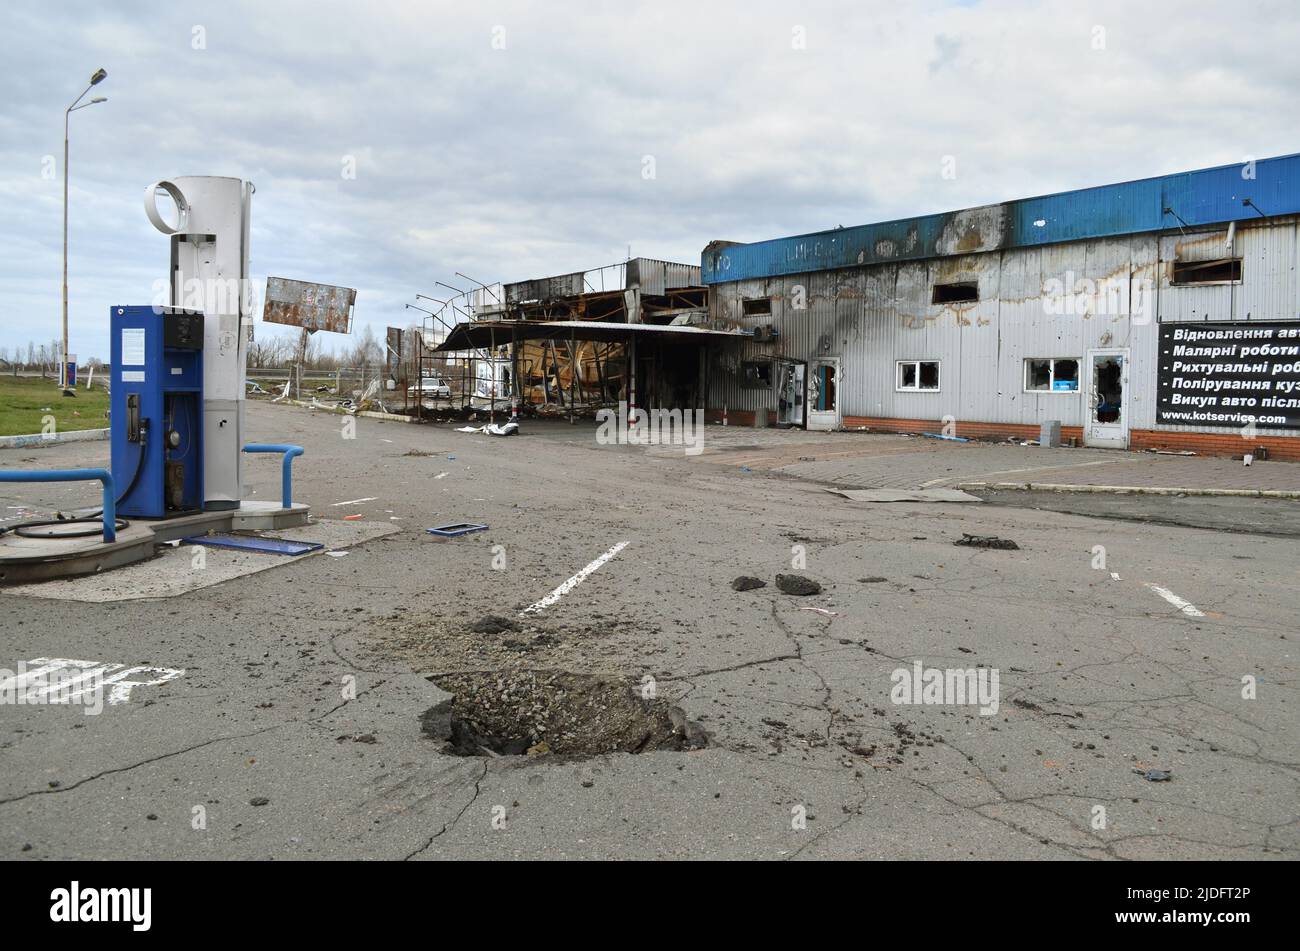 Mriya, région de Kiev, Ukraine - 11 avril 2022 : station-service et station-service détruites pendant les hostilités actives dans la région de Kiev. Banque D'Images